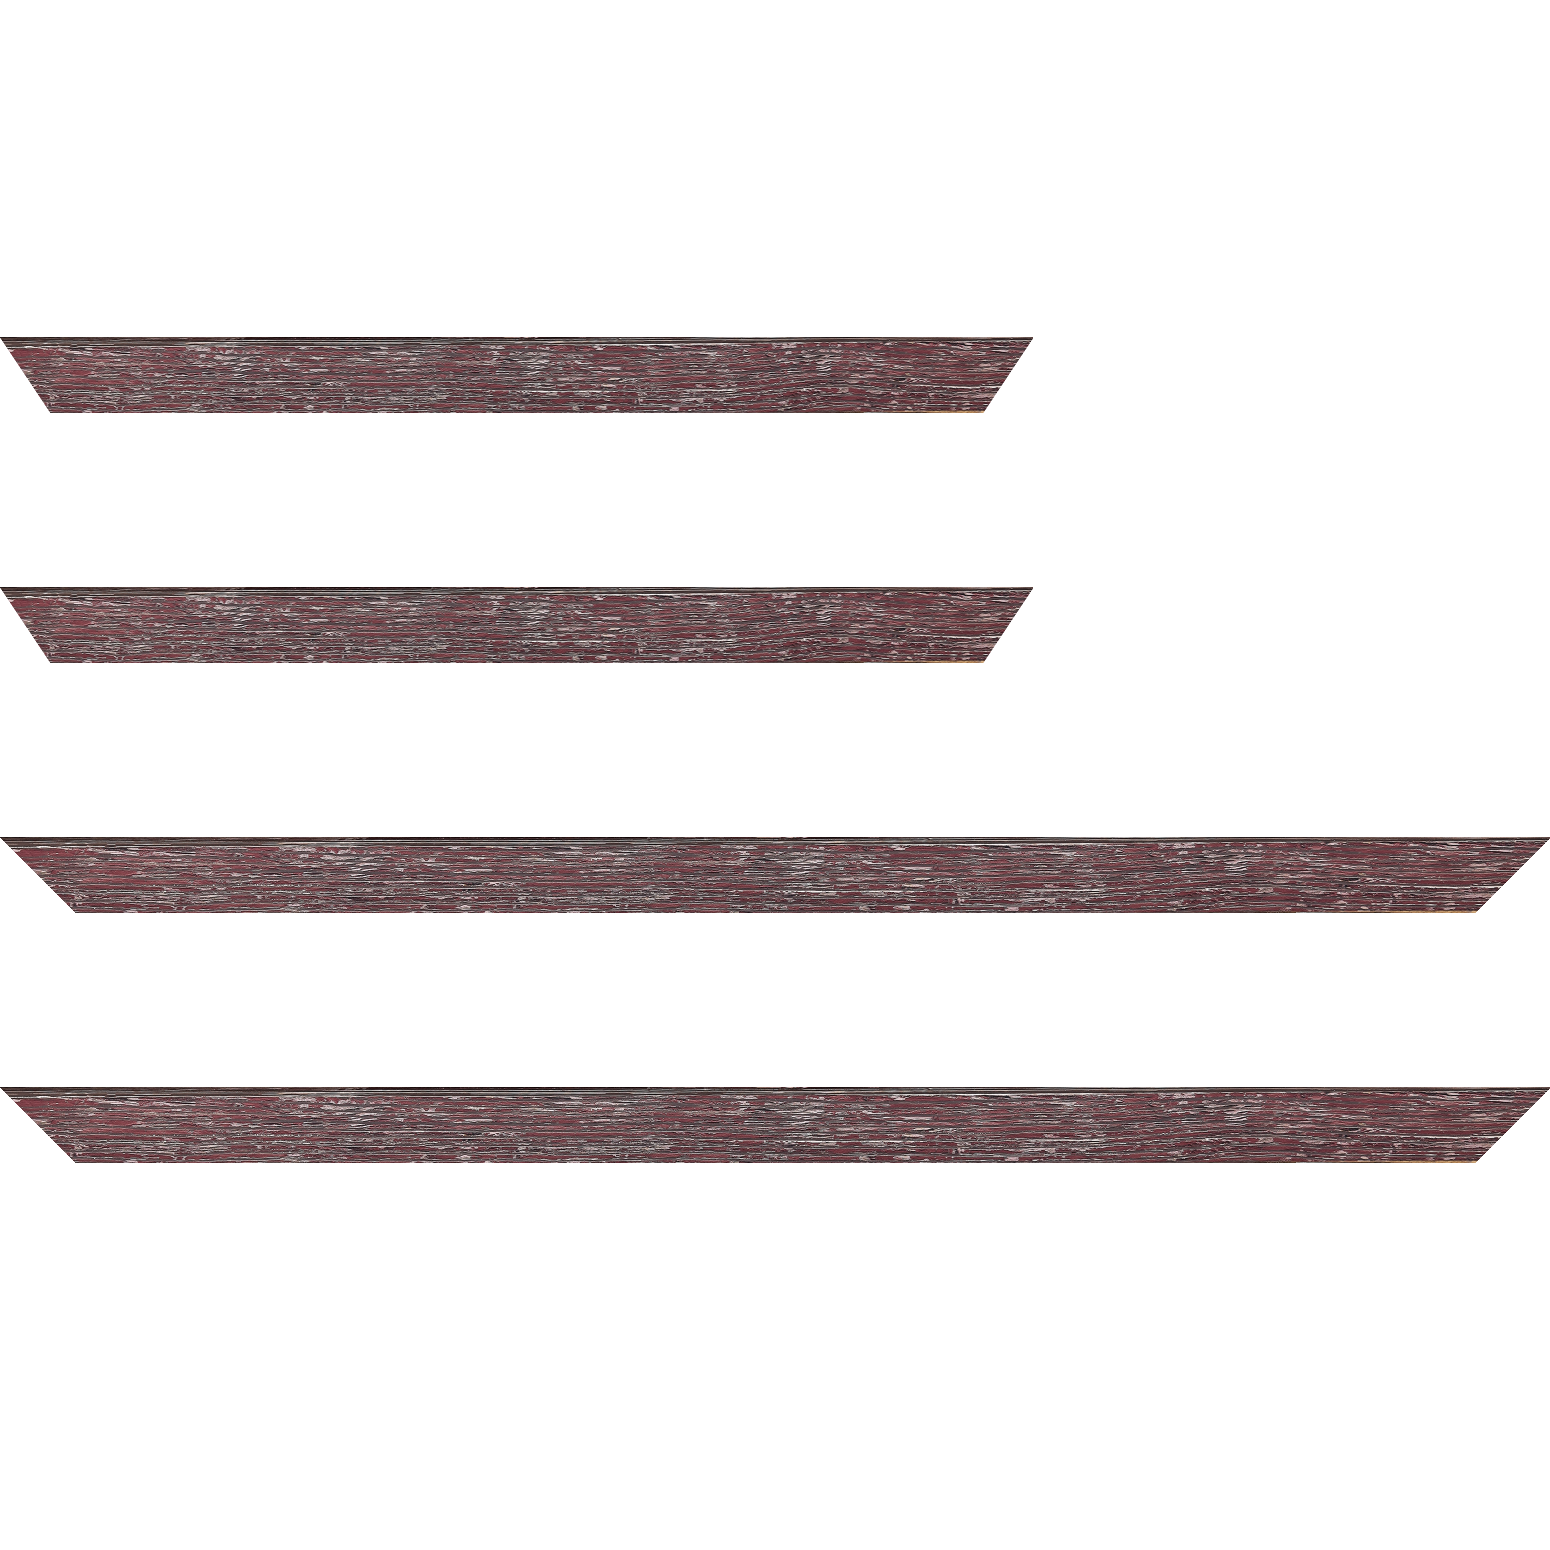 Baguette bois profil arrondi en pente plongeant largeur 2.4cm couleur framboise finition veinée, reflet argenté - 92x60